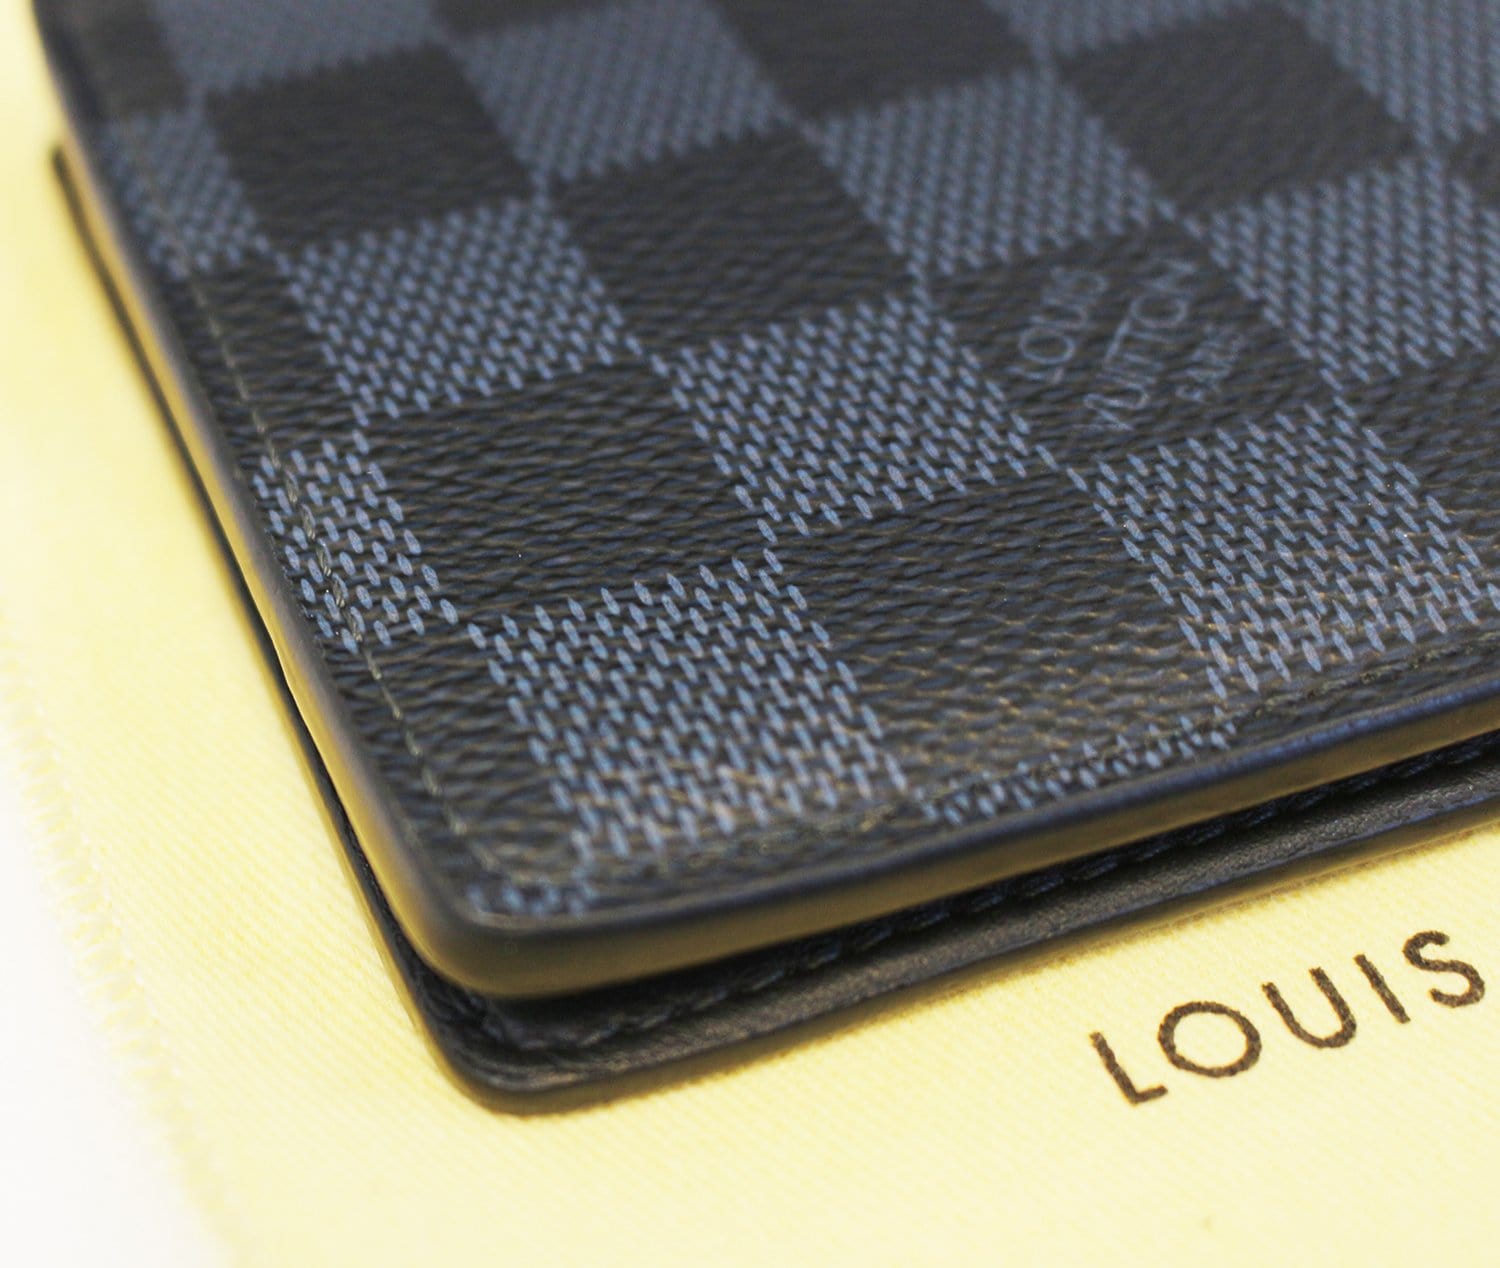 Louis Vuitton Damier Azur Multiple Wallet